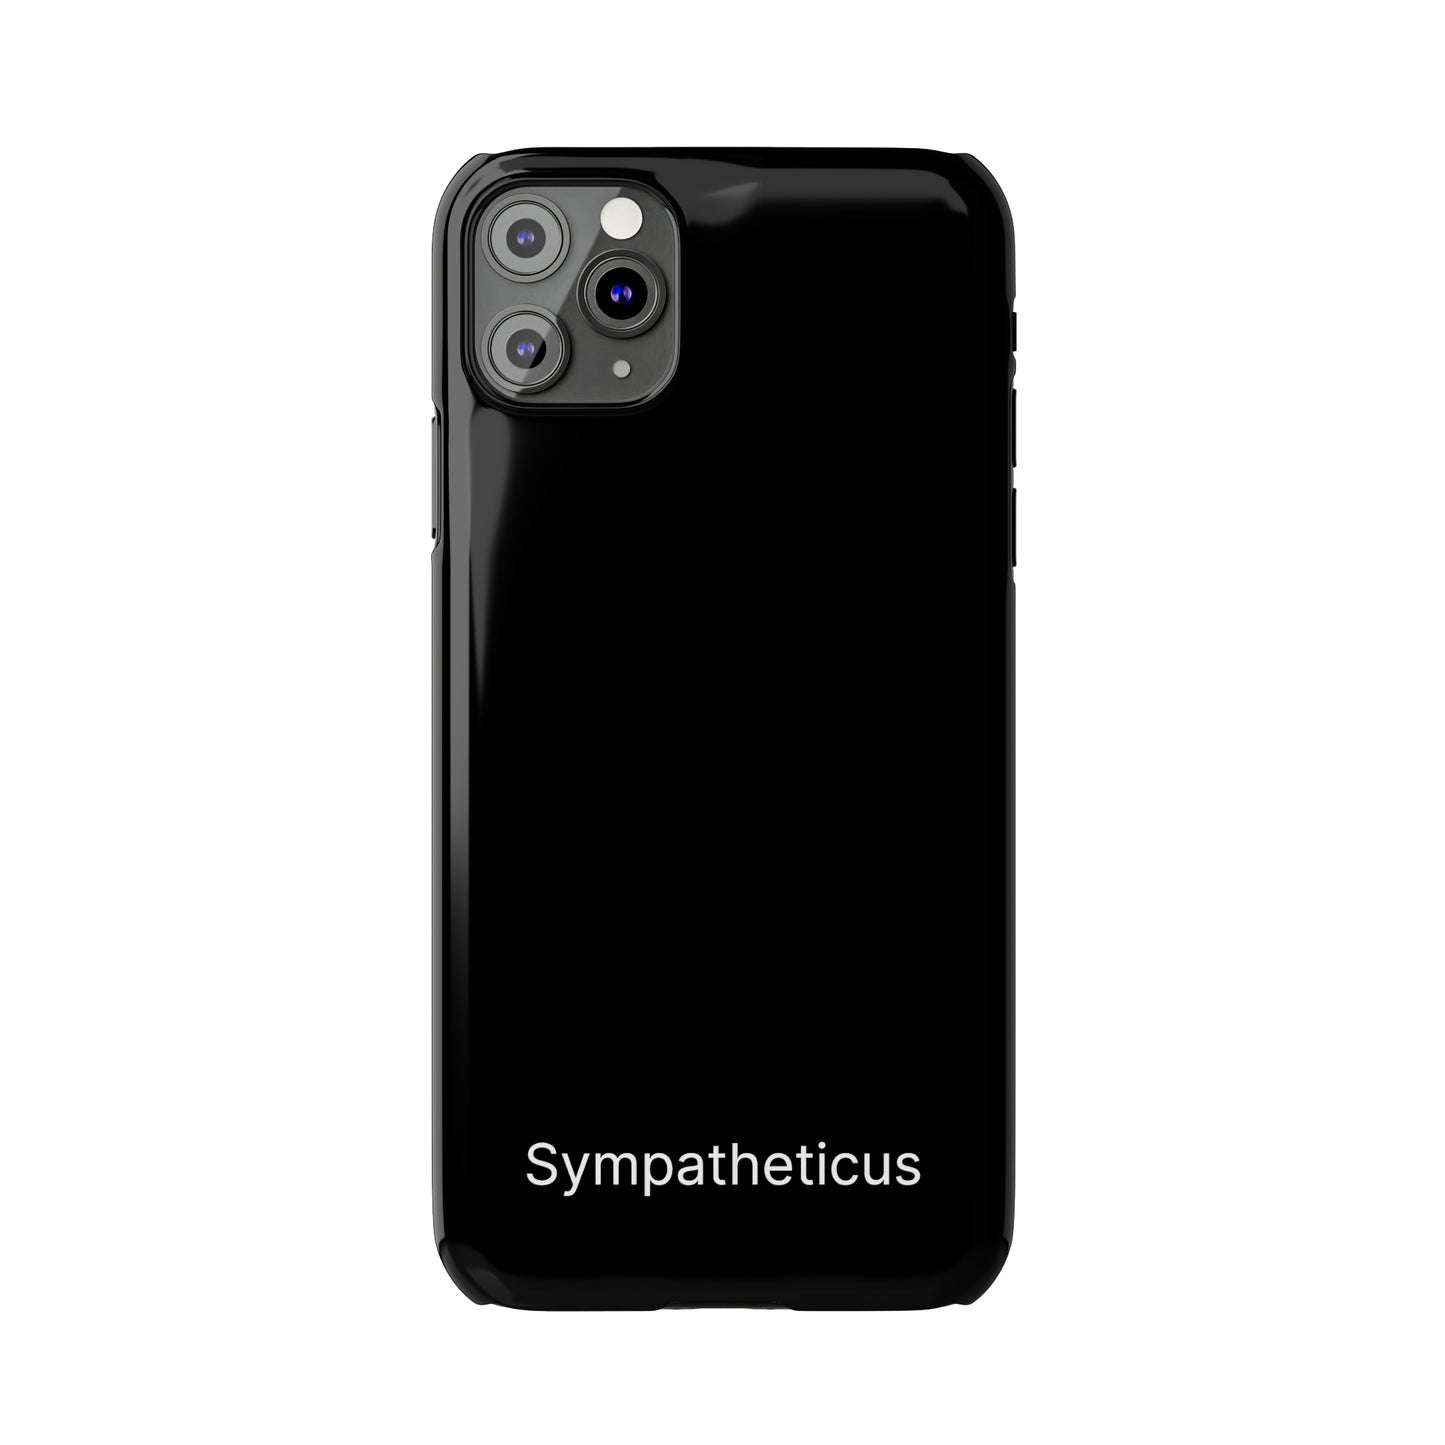 Sympatheticus essential slim iphone case v1-02